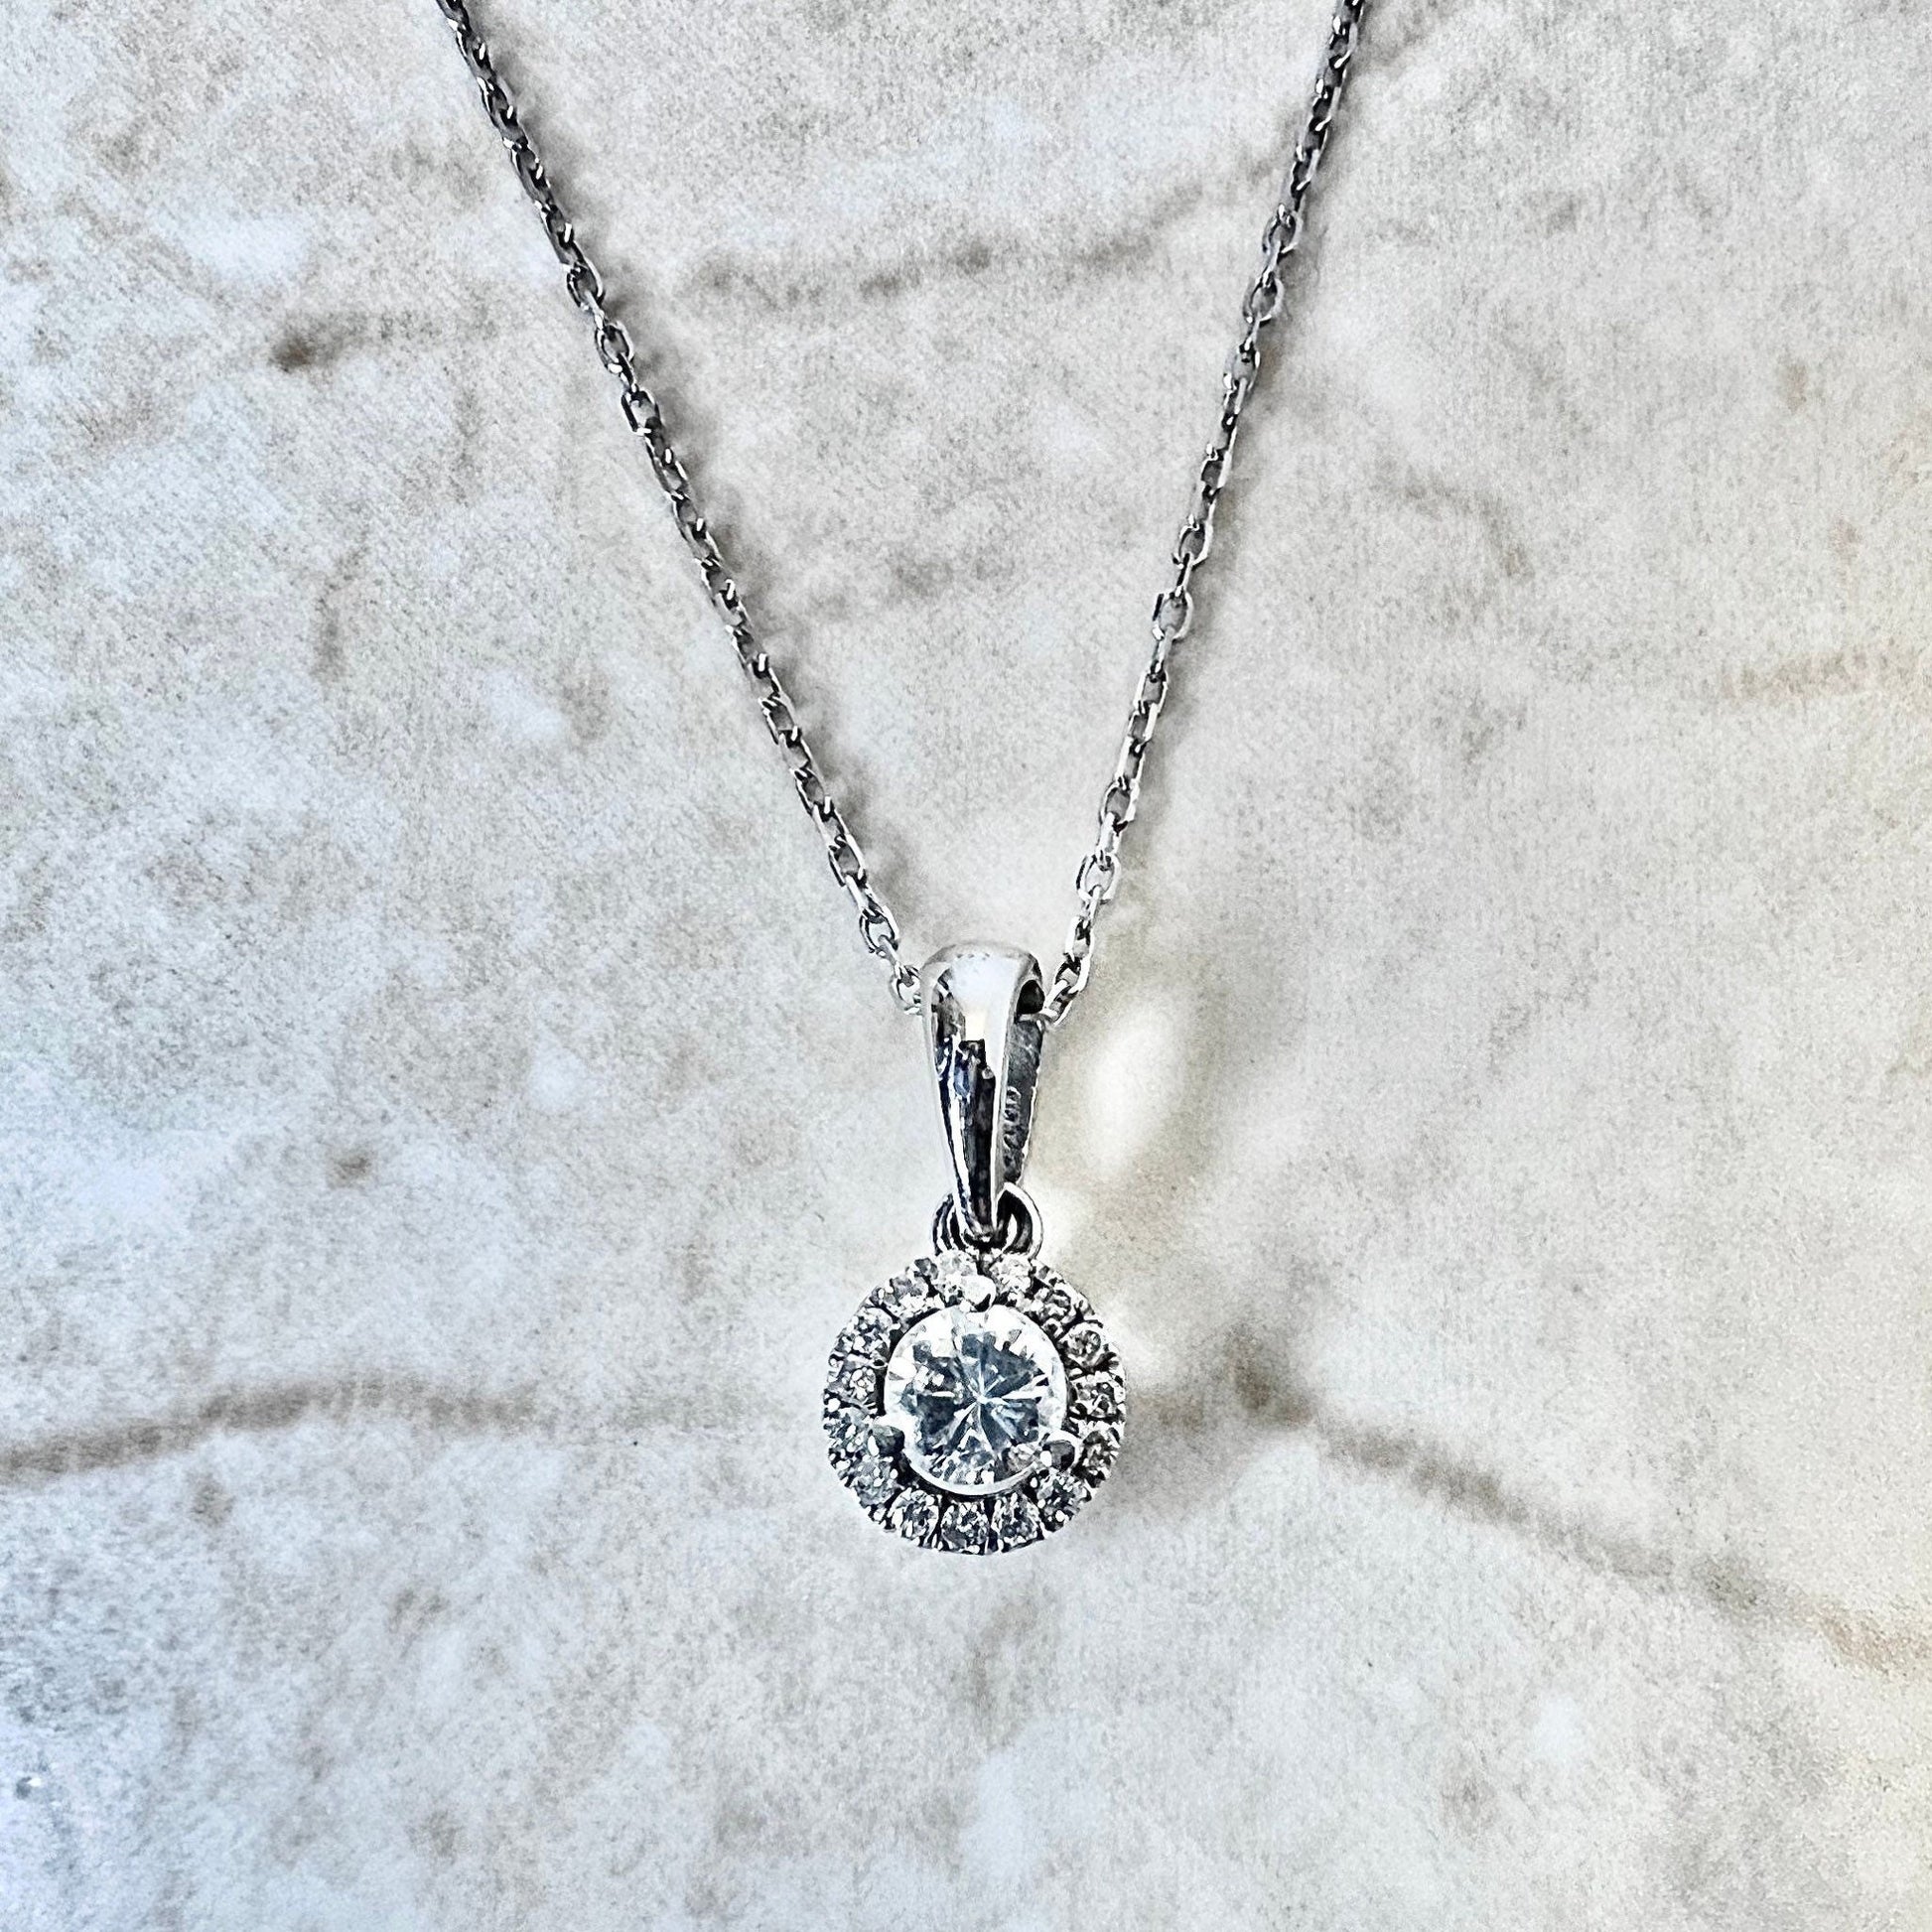 14K Diamond Halo Pendant Necklace - 14 Karat White Gold Diamond Pendant - Diamond Halo Necklace - Diamond Necklace - Best Gift For Her